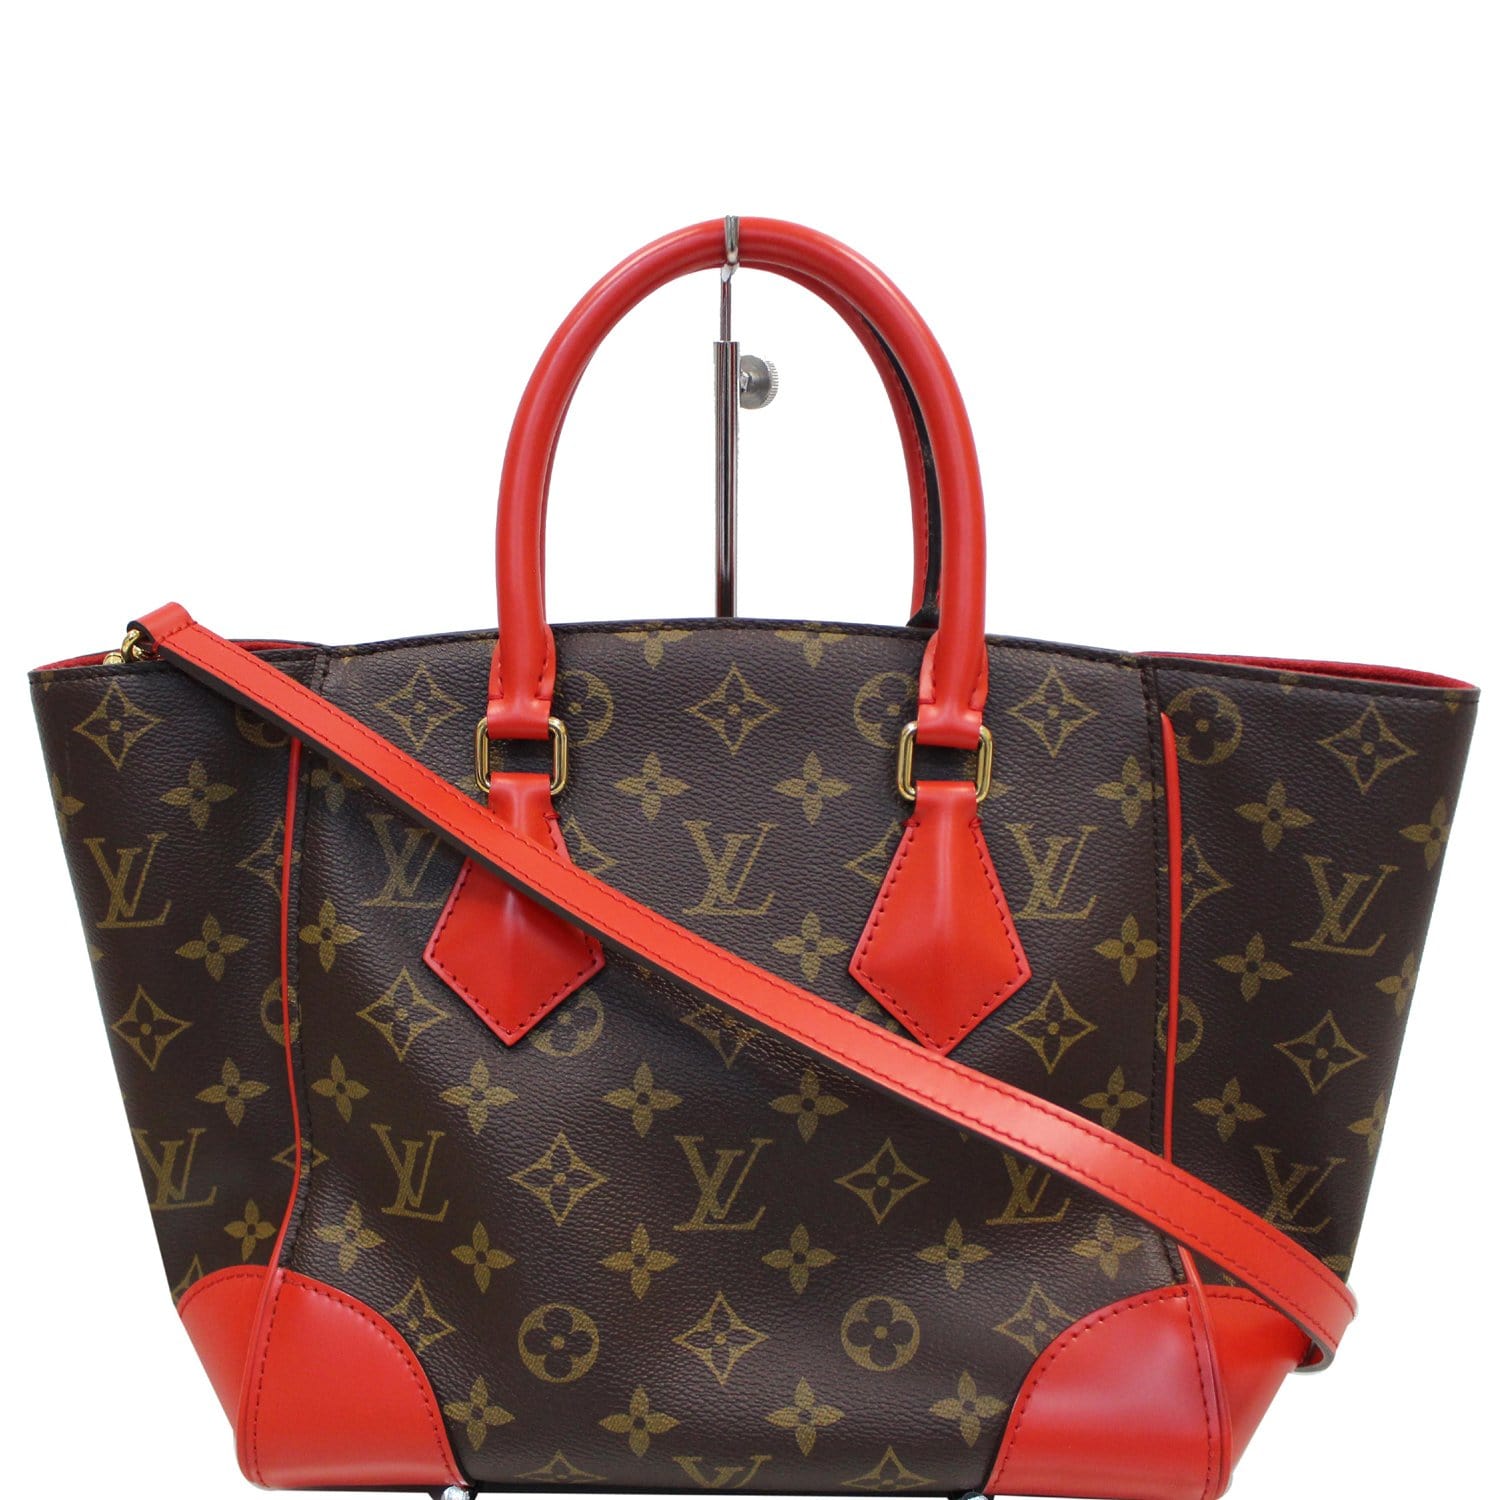 Louis Vuitton Phenix PM Bag